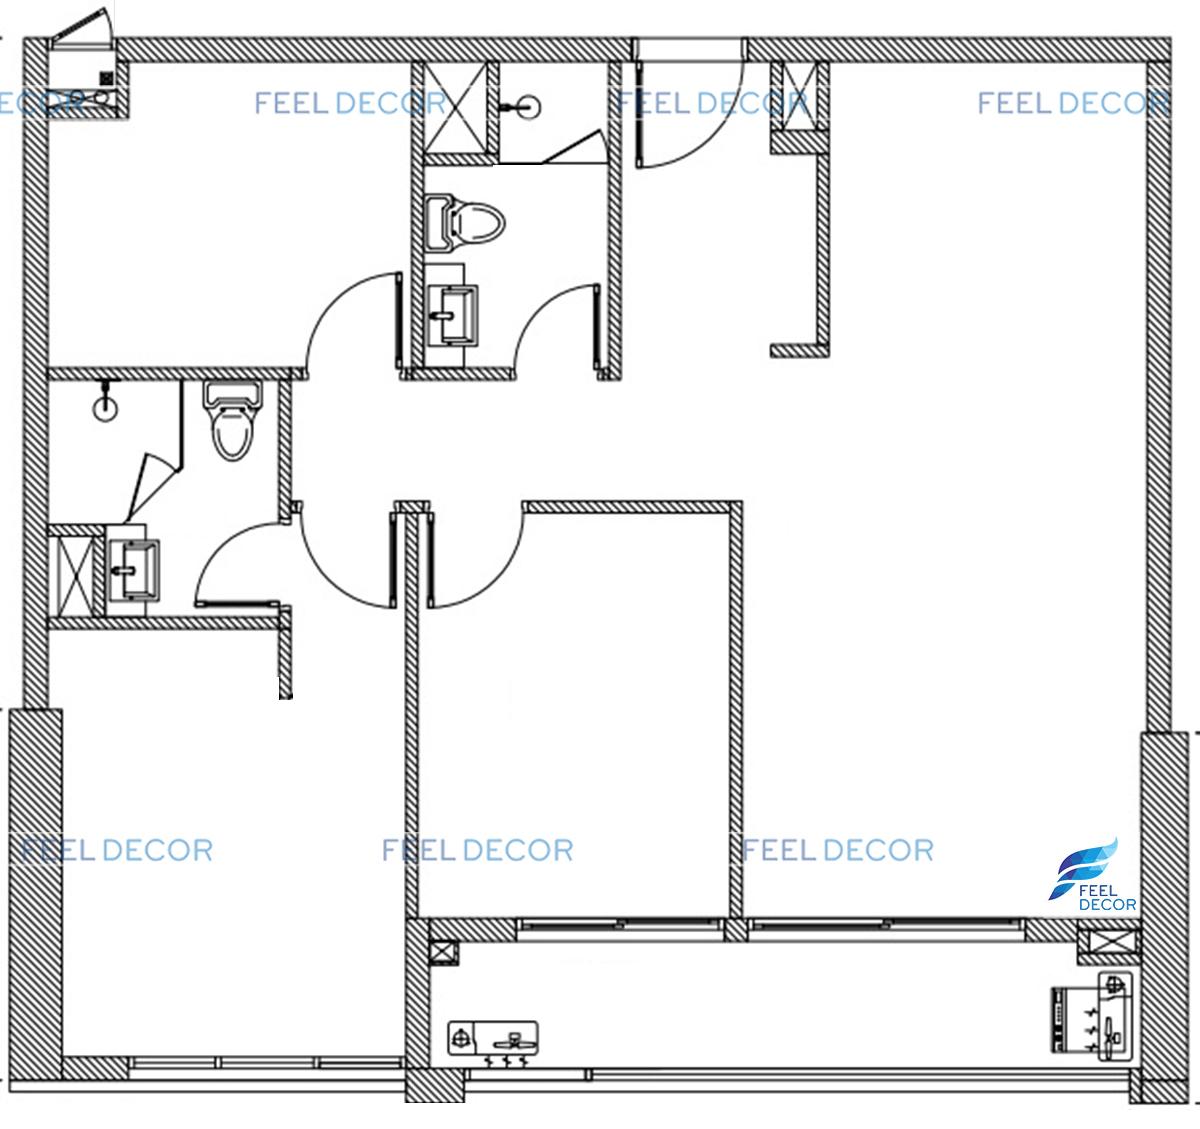 Thiết kế thi công nội thất căn hộ 3 phòng ngủ 81m2 chung cư Orchard Parkview – FD9118